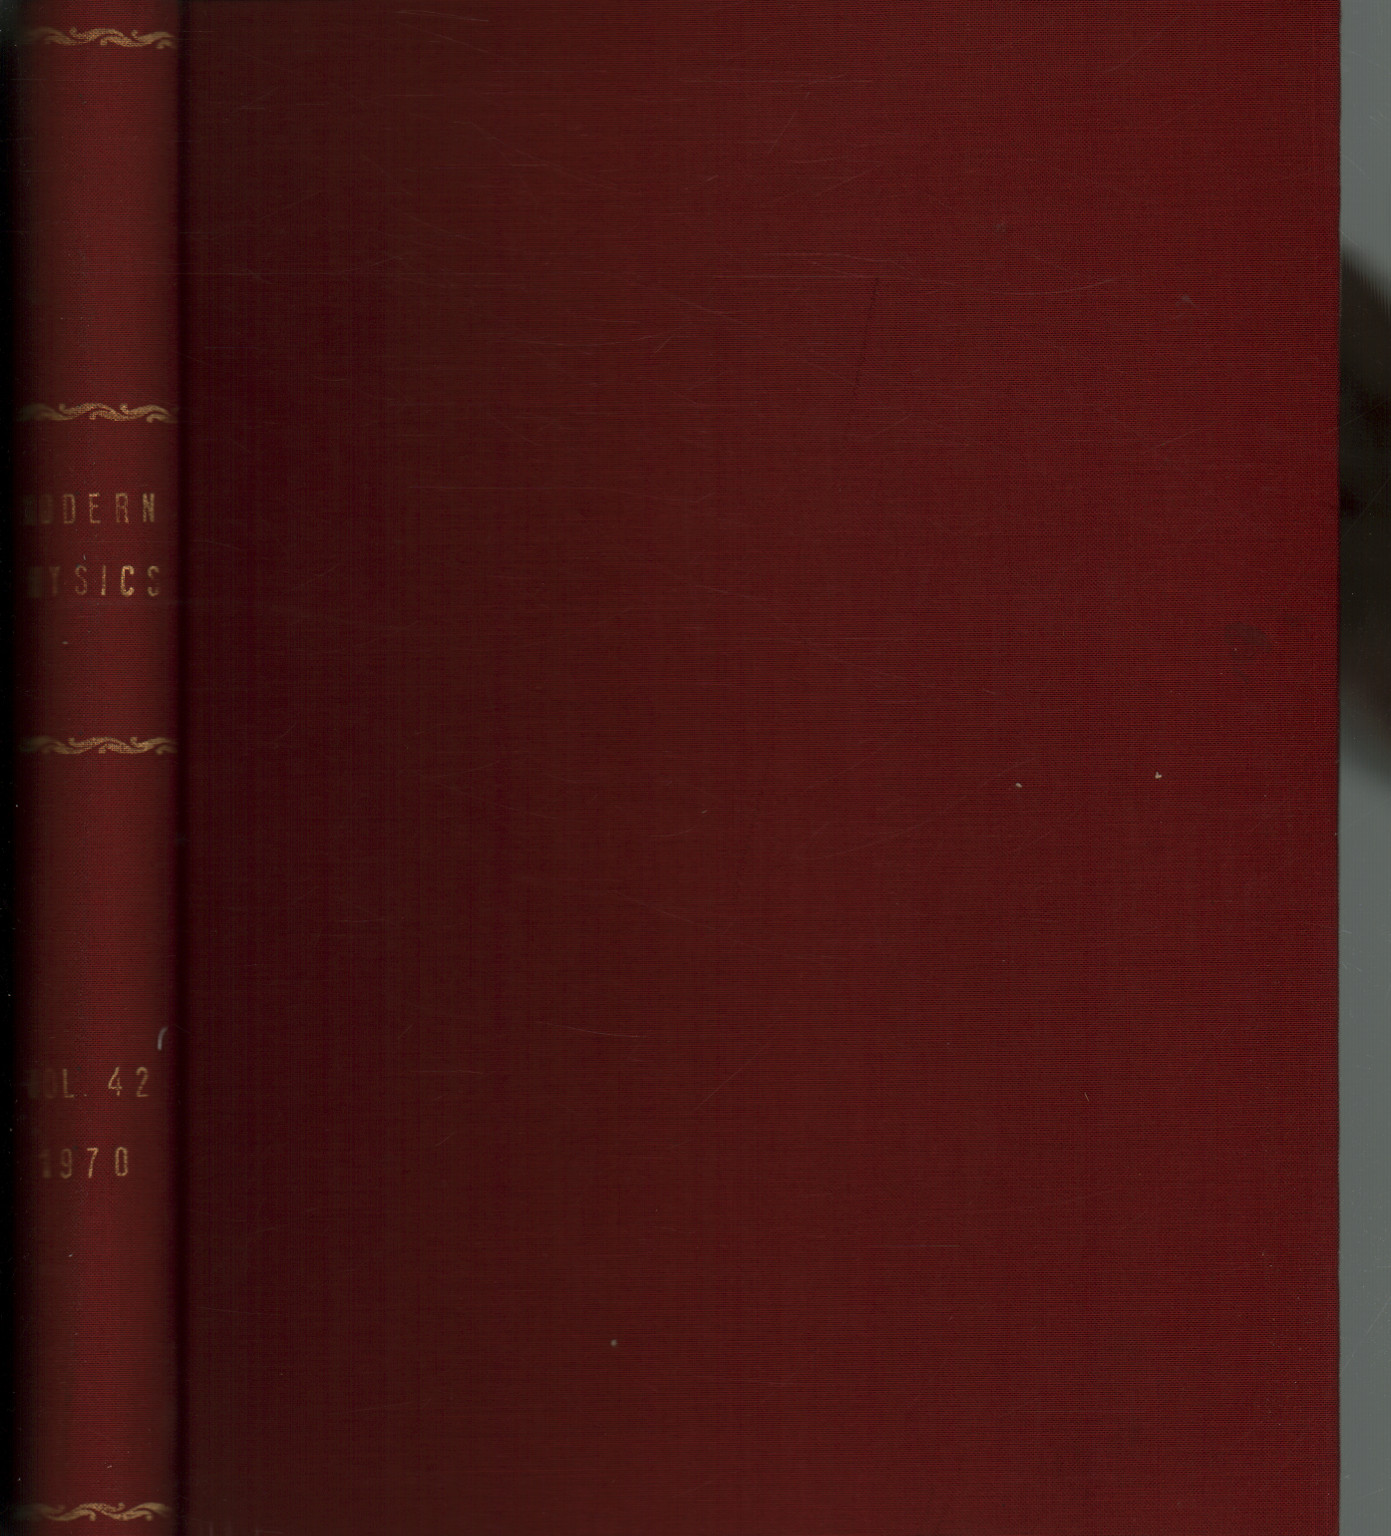 Examens de la Physique Moderne, 1970. Volume 42, 1-4 , s.un.